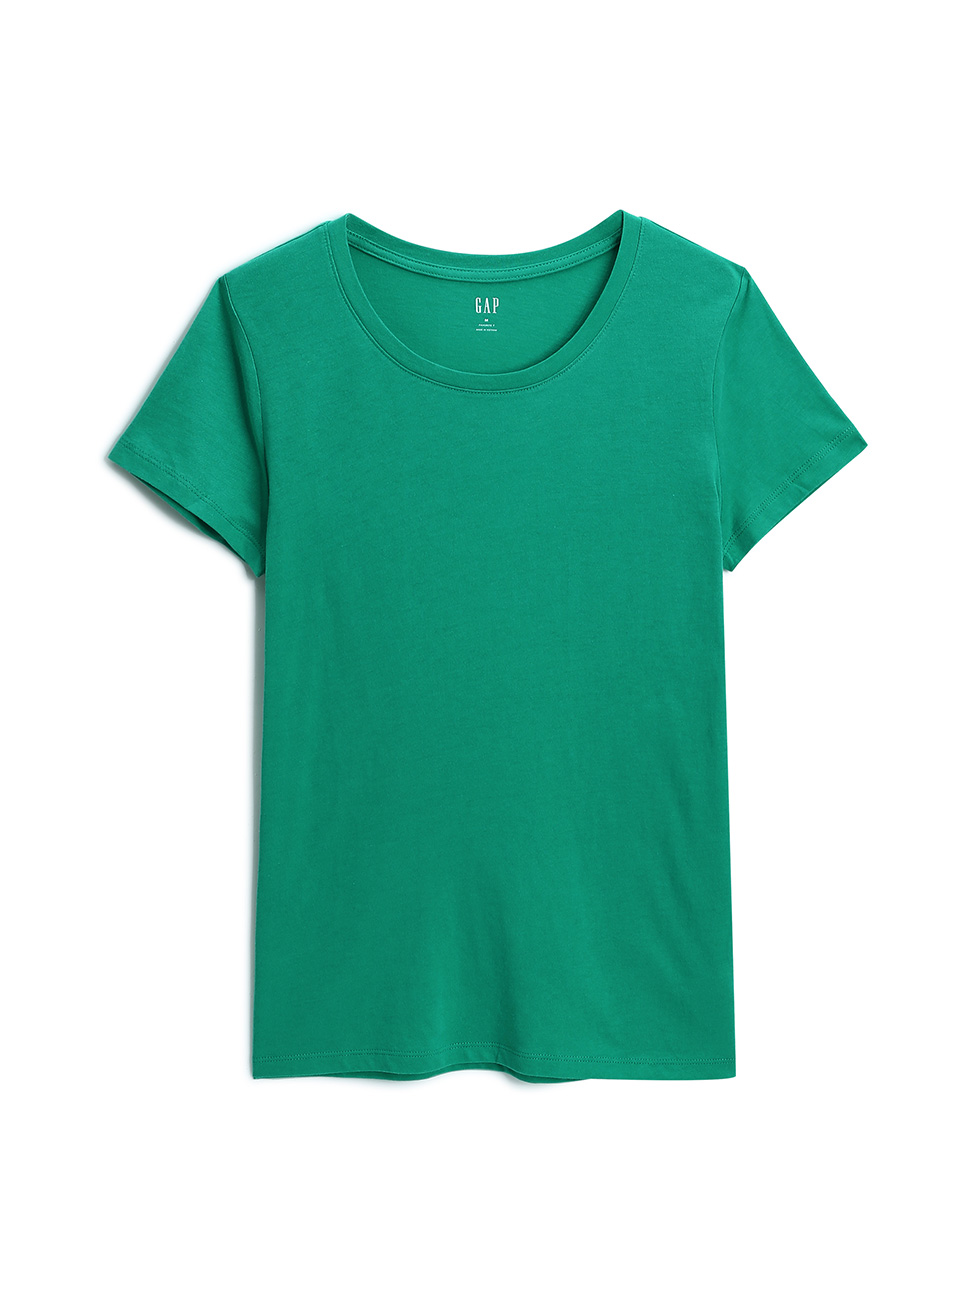 女裝|棉質舒適圓領短袖T恤-綠色